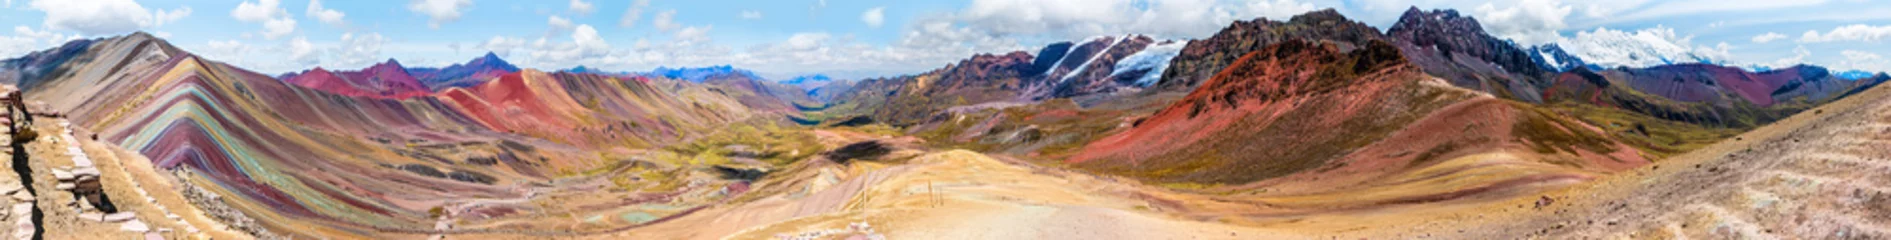 Photo sur Plexiglas Vinicunca Vinicunca ou Winikunka. Aussi appelé Montna a de Siete Colores. Montagne dans les Andes du Pérou